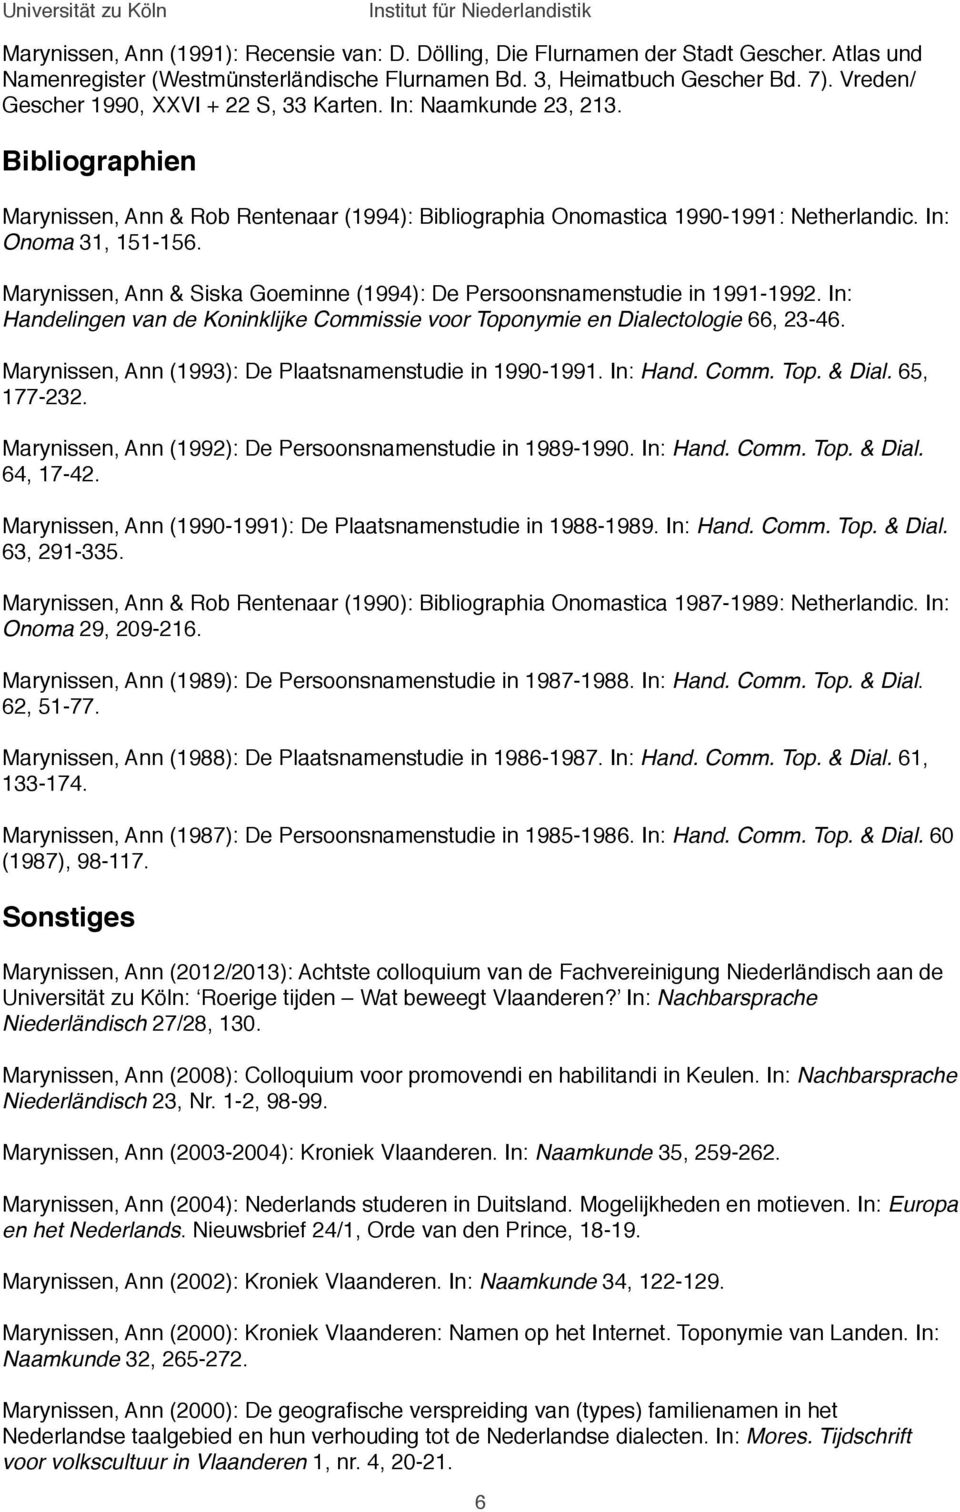 Marynissen, Ann & Siska Goeminne (1994): De Persoonsnamenstudie in 1991-1992. In: Handelingen van de Koninklijke Commissie voor Toponymie en Dialectologie 66, 23-46.